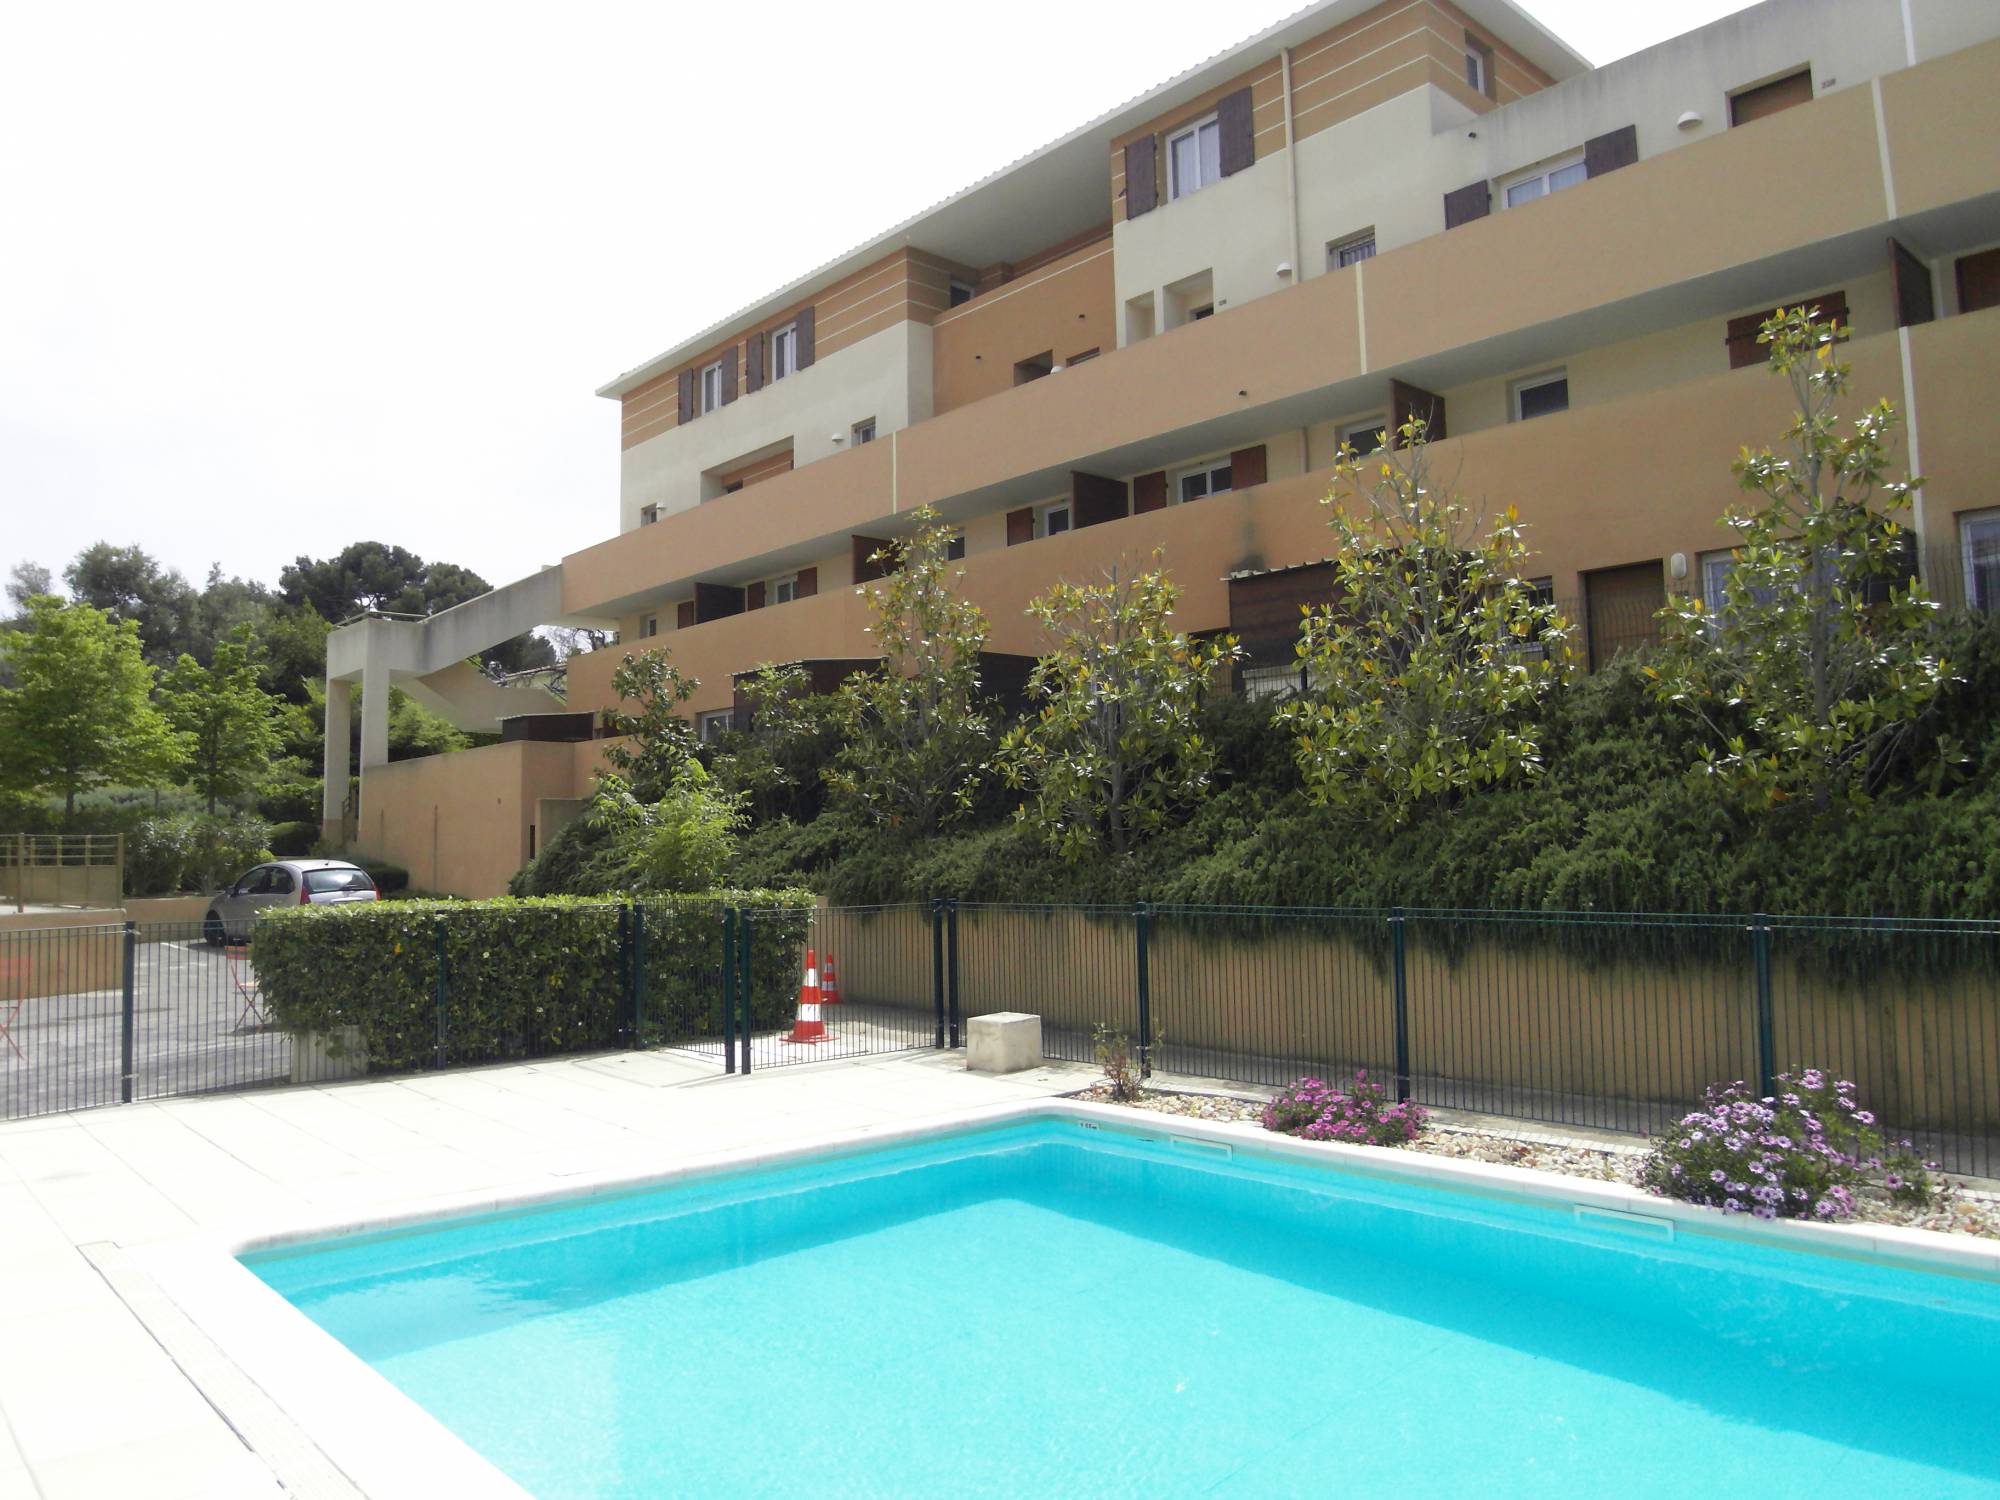 L'agence immobilière provencia vous propose a louer sur plan de cuques un duplex avec place de parking privative. 